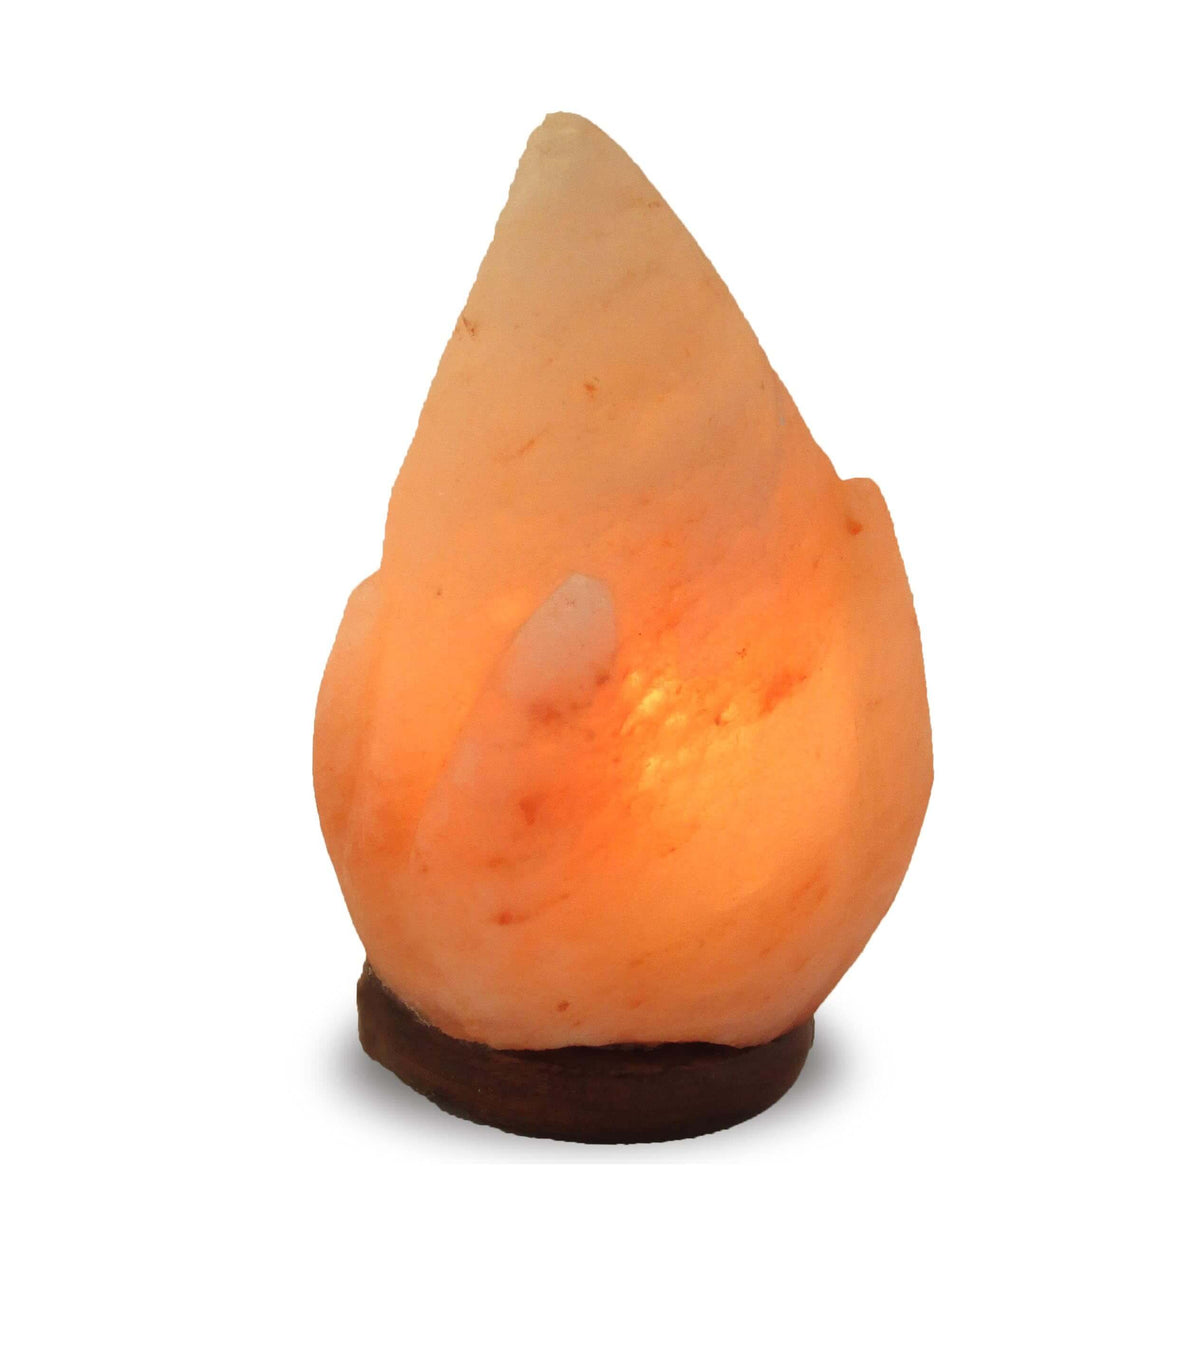 Rustic Flame Himalayan Salt Lamp - The House of Awareness